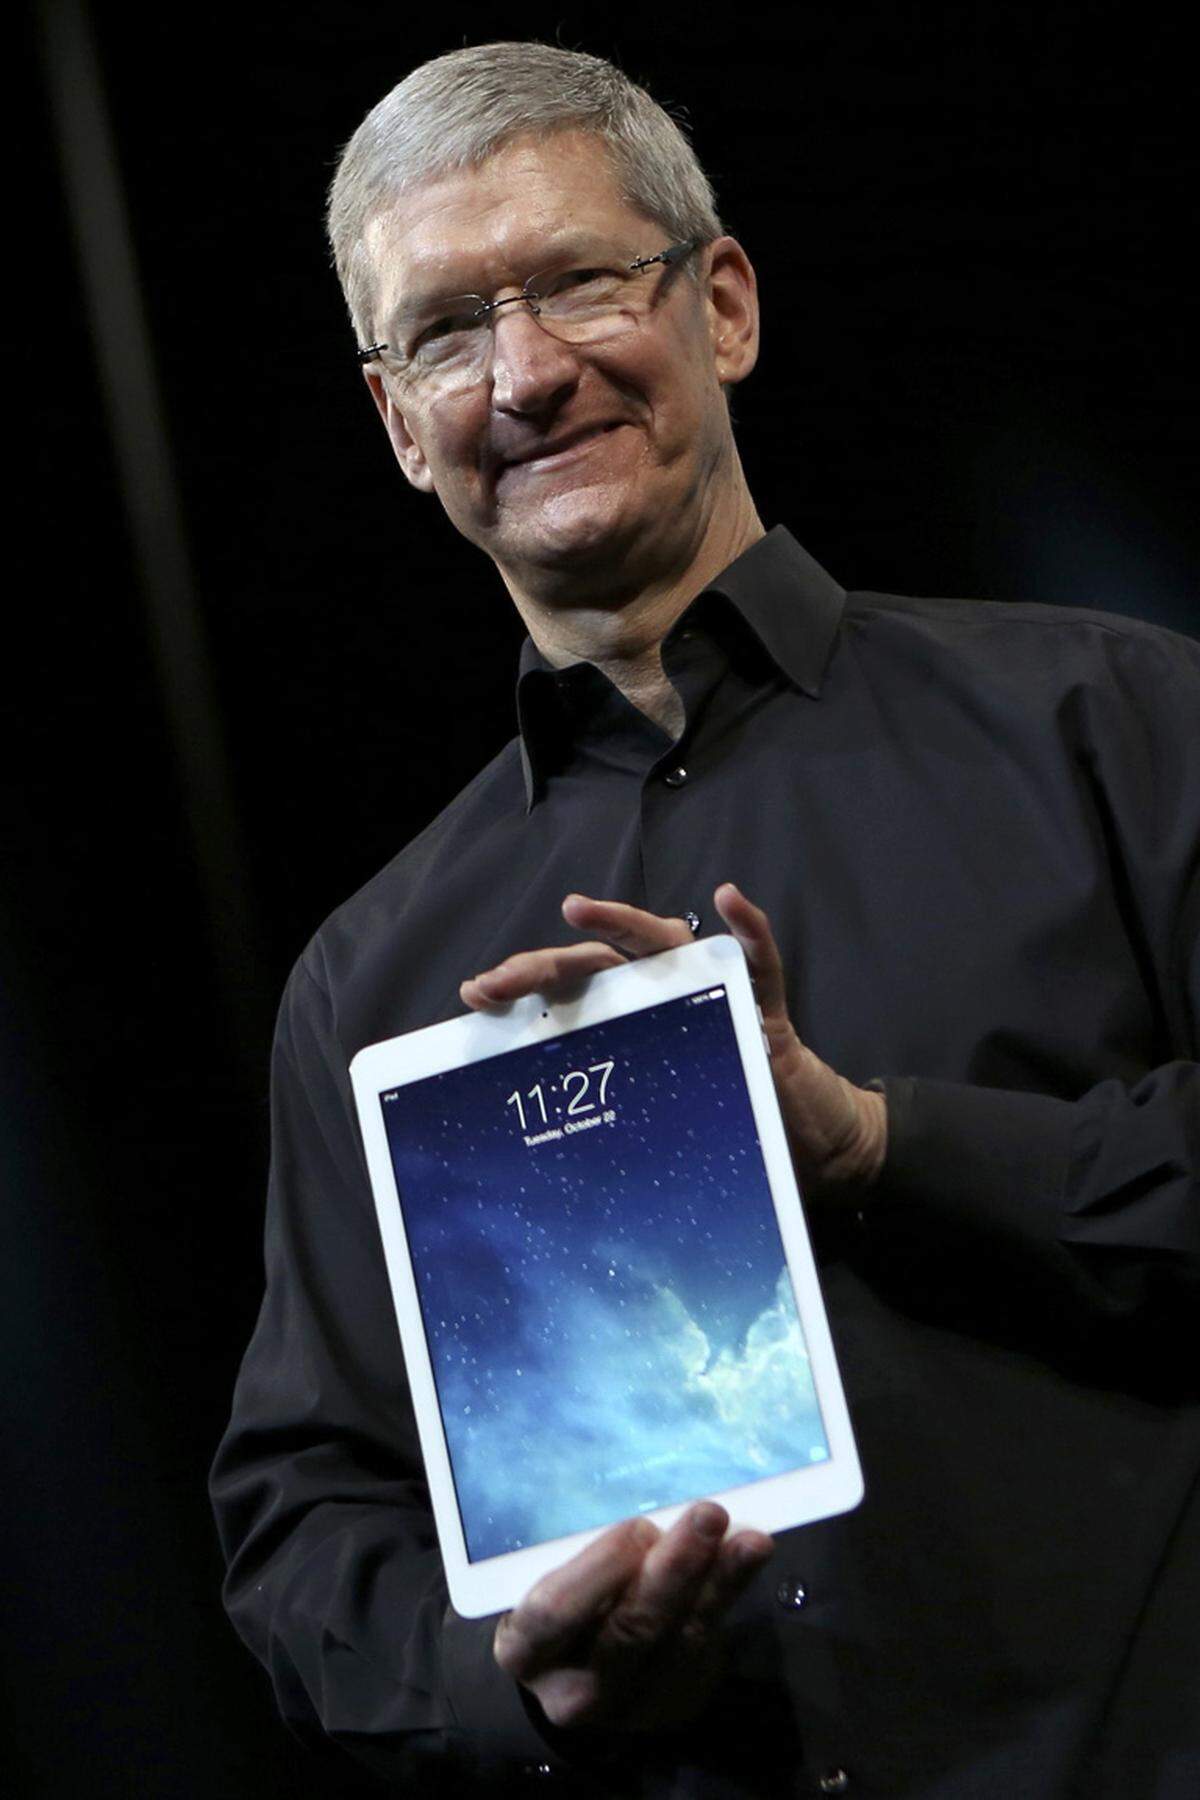 Apple will die Spitzenposition im Tablet-Markt mit einer neuen iPad-Generation verteidigen. Firmenchef Tim Cook ist sichtlich stolz auf das "iPad Air": Das große Modell wurde deutlich dünner, leichter und leistungsstärker gemacht.